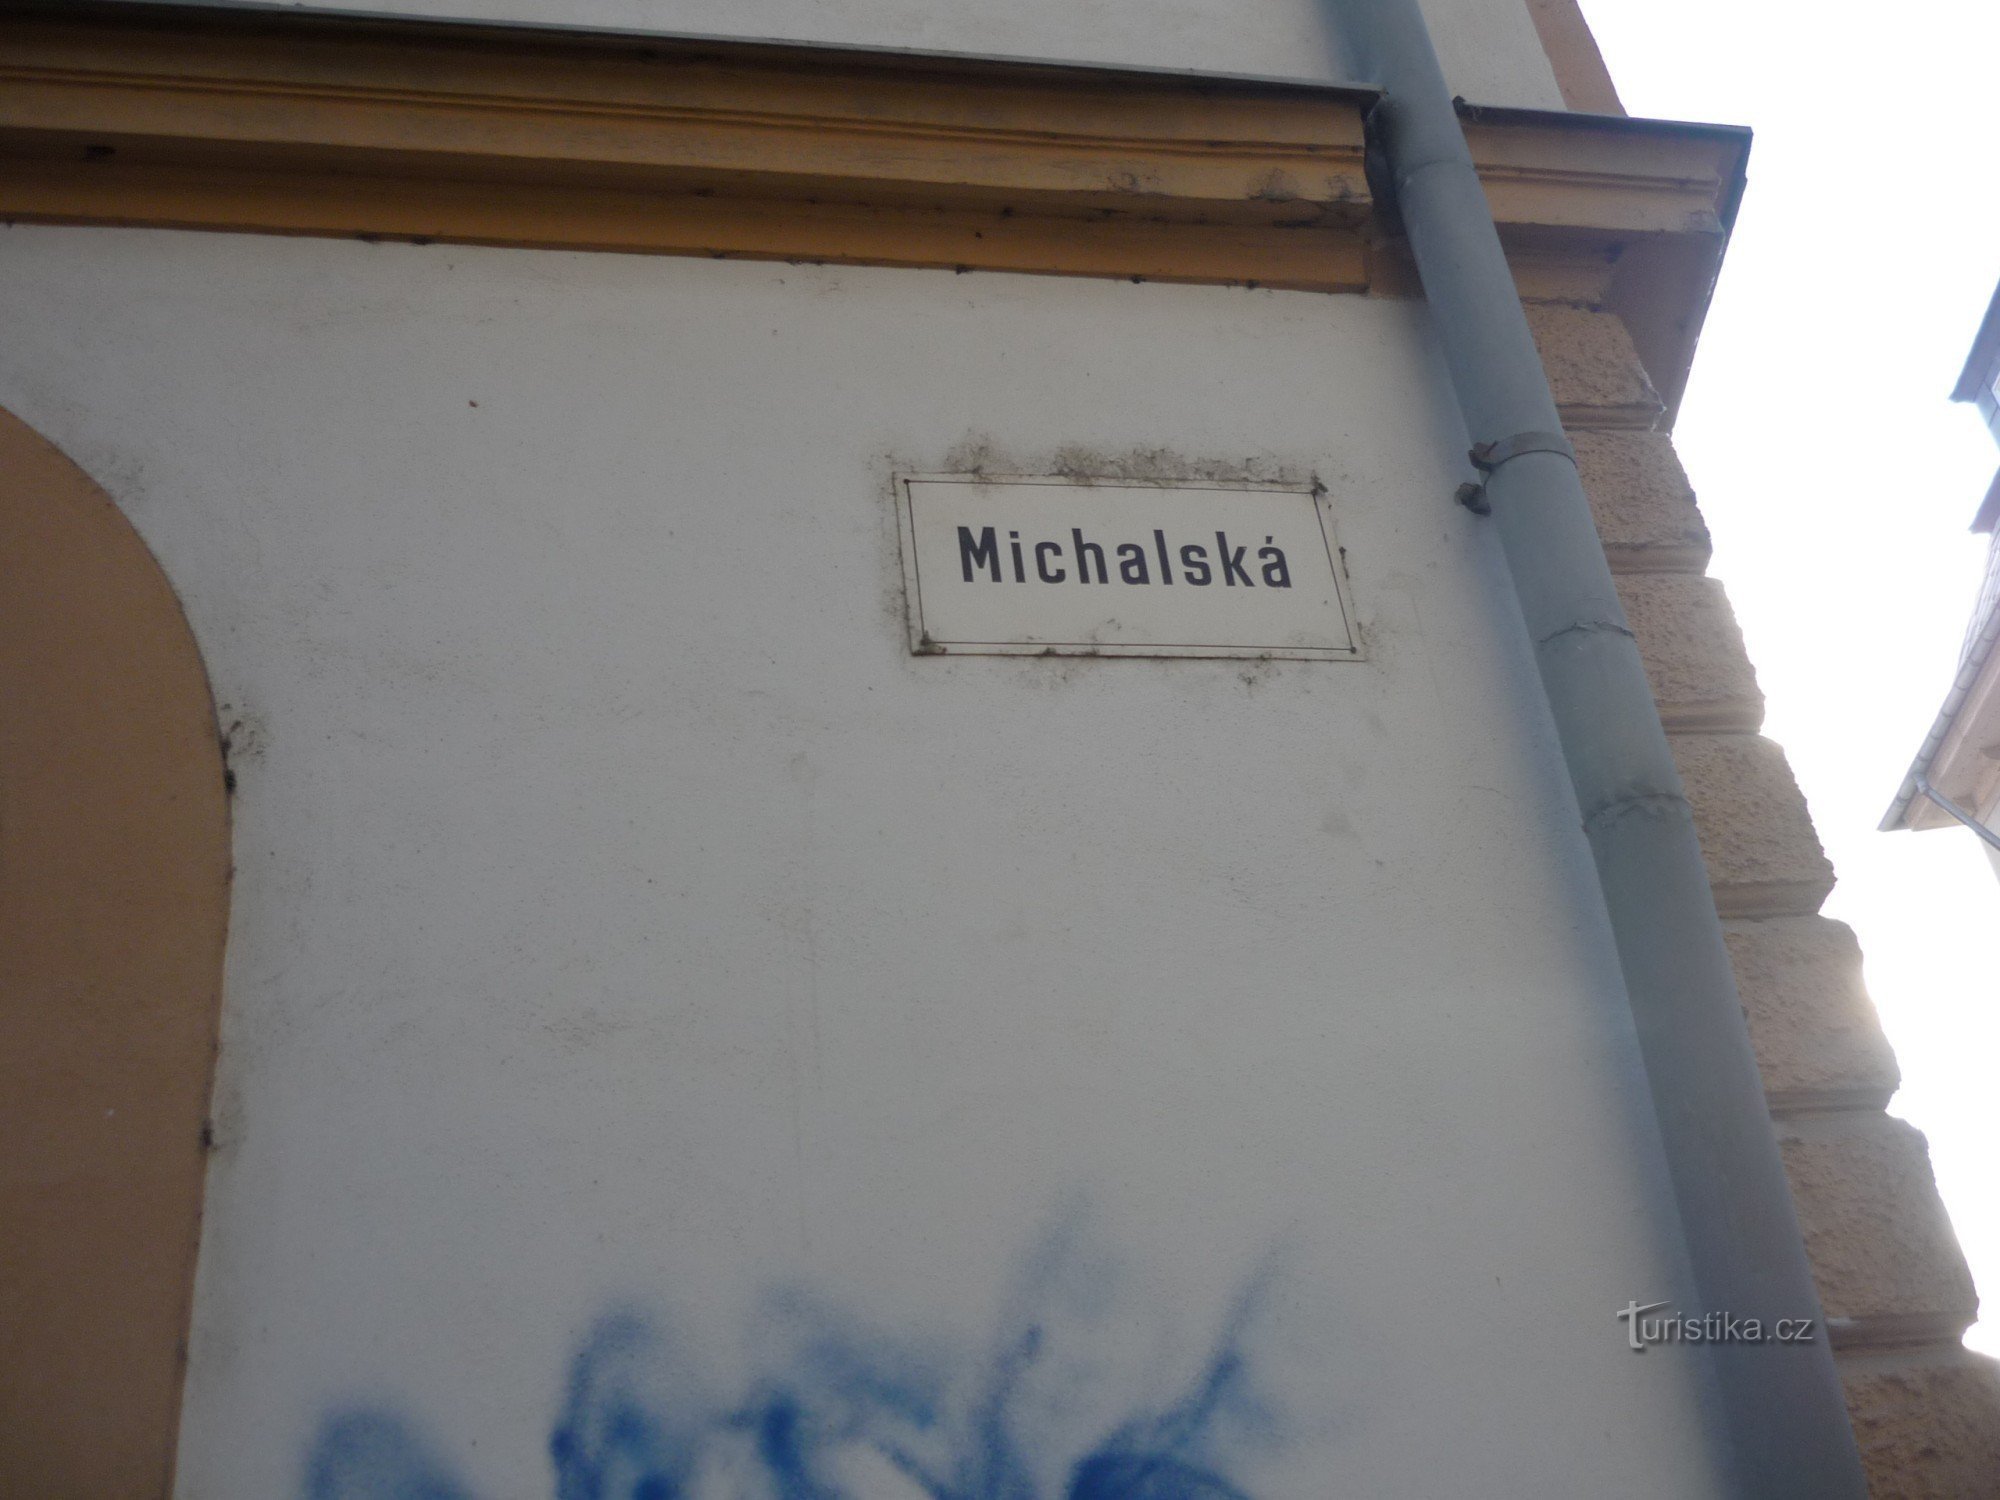 Michalská